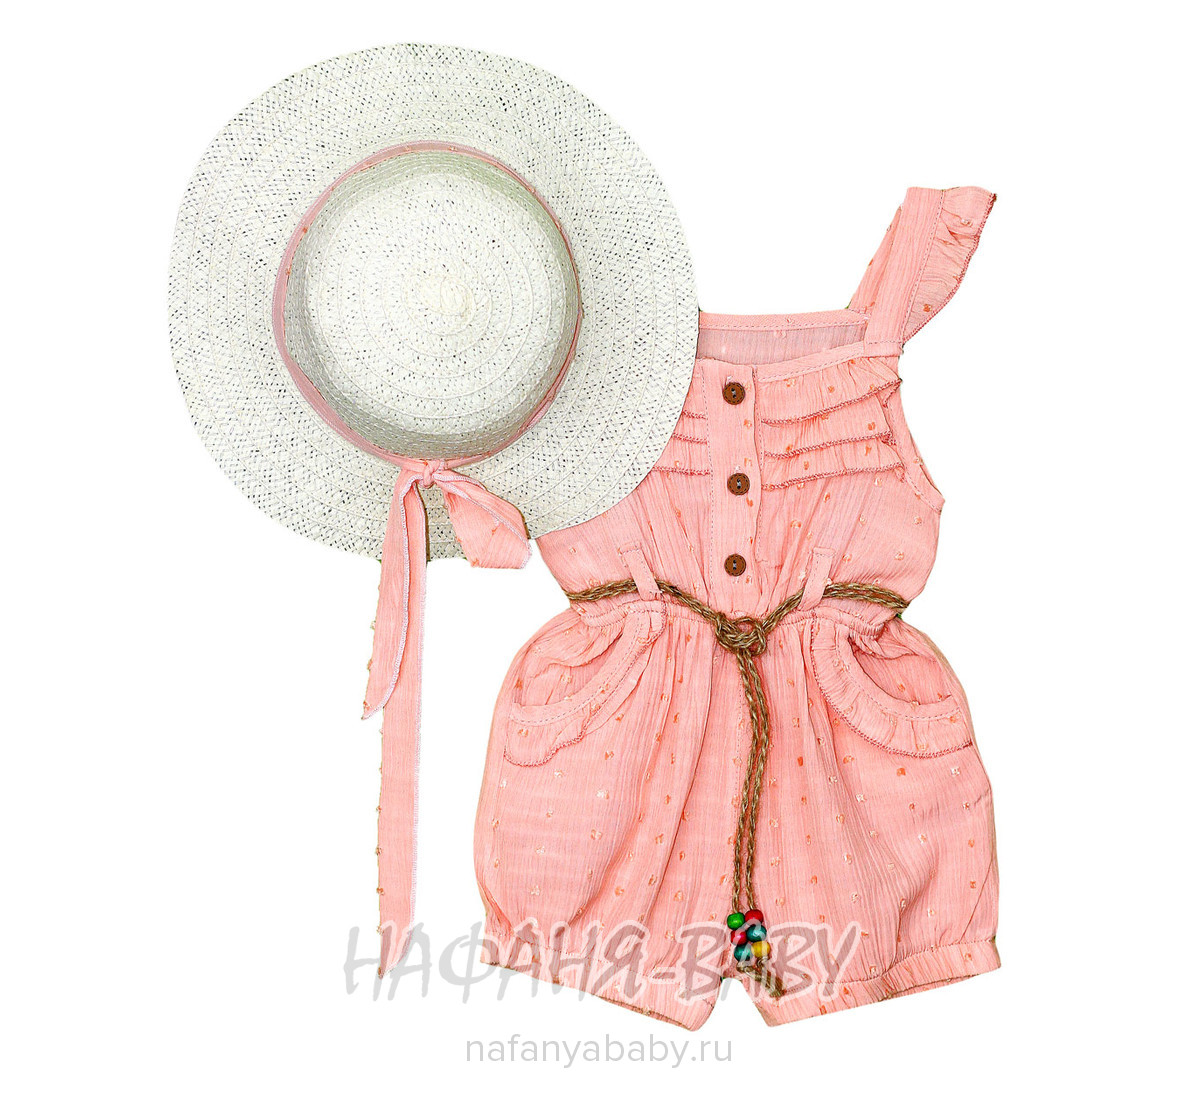 Детский костюм (комбинезон-шорты+шляпка) PIKOLINE арт: 1057, 5-9 лет, 1-4 года, цвет персиковый, оптом Турция